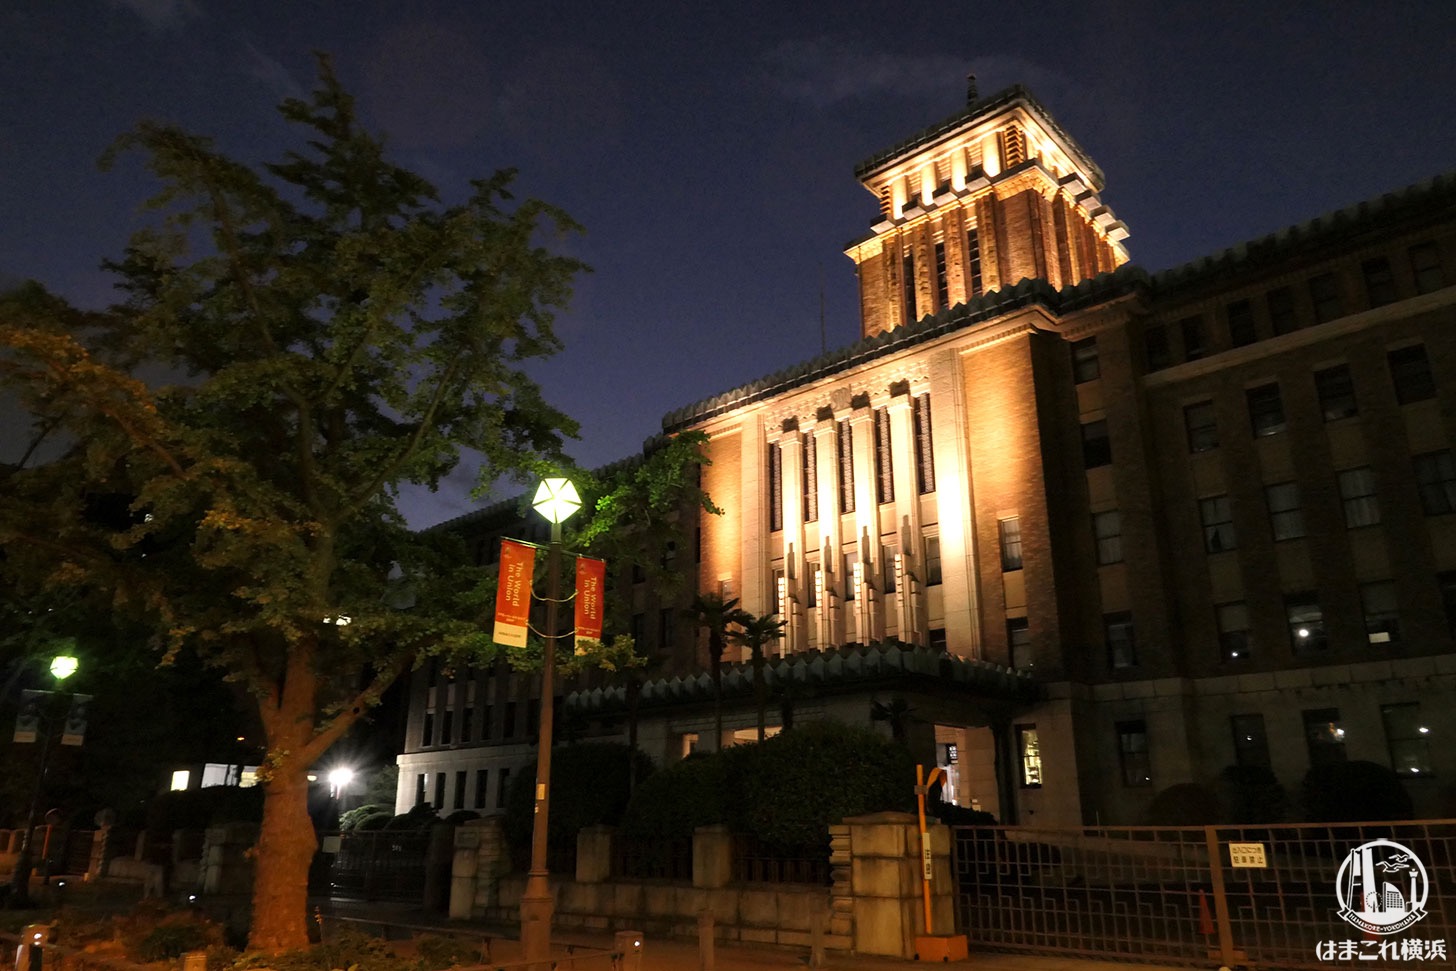 神奈川県庁本庁舎 特別演出ライトアップ